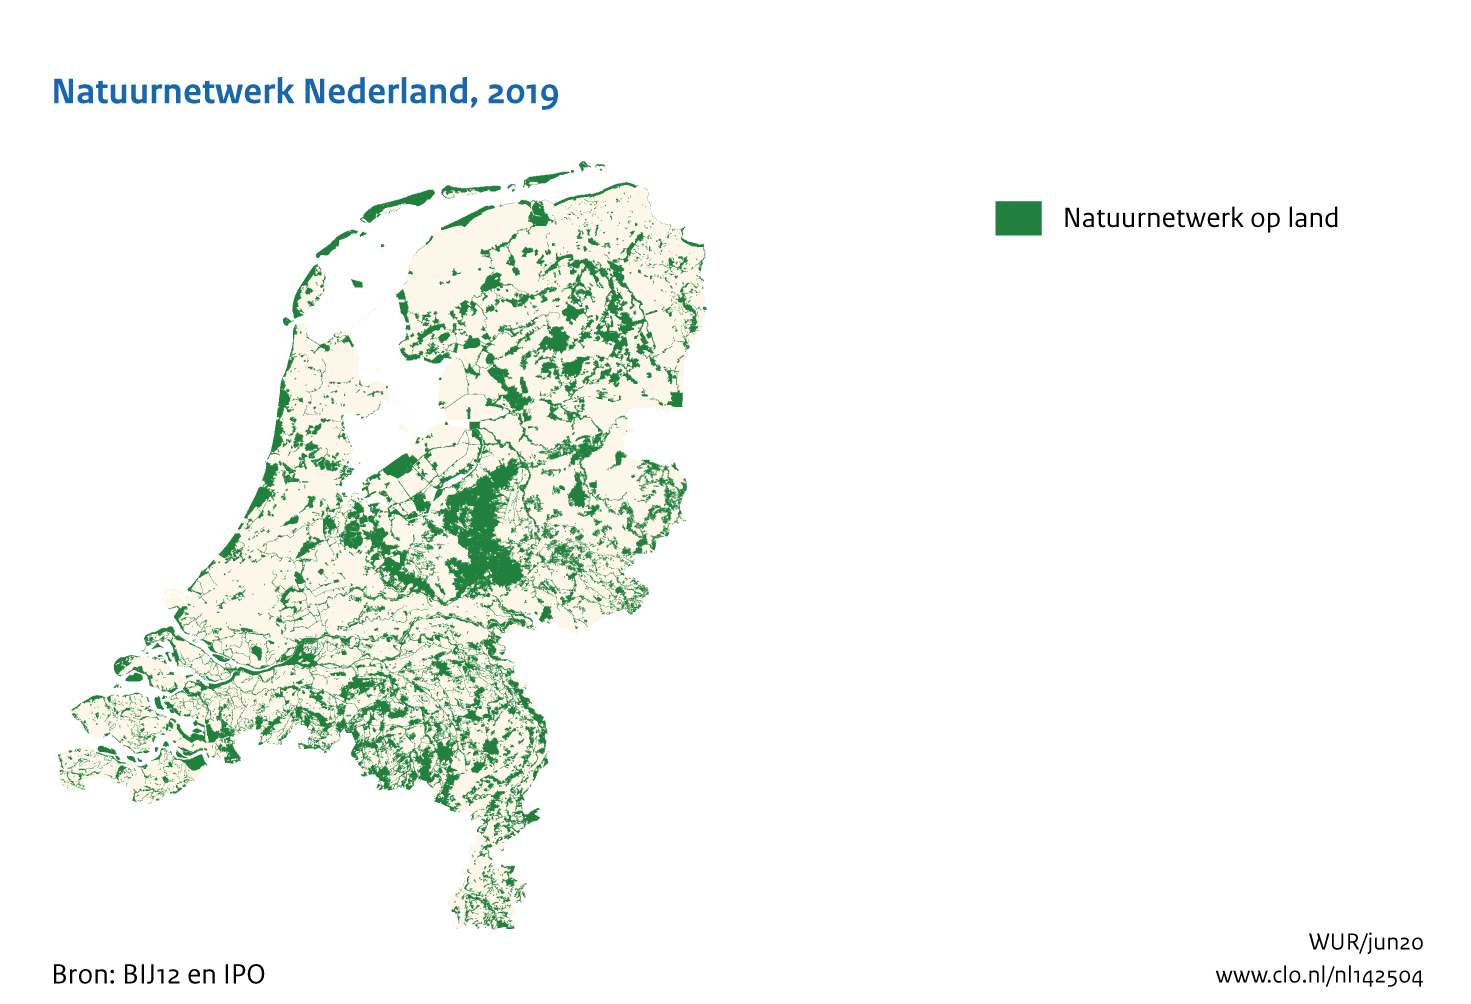 Figuur Natuurnetwerk Nederland 2019. In de rest van de tekst wordt deze figuur uitgebreider uitgelegd.